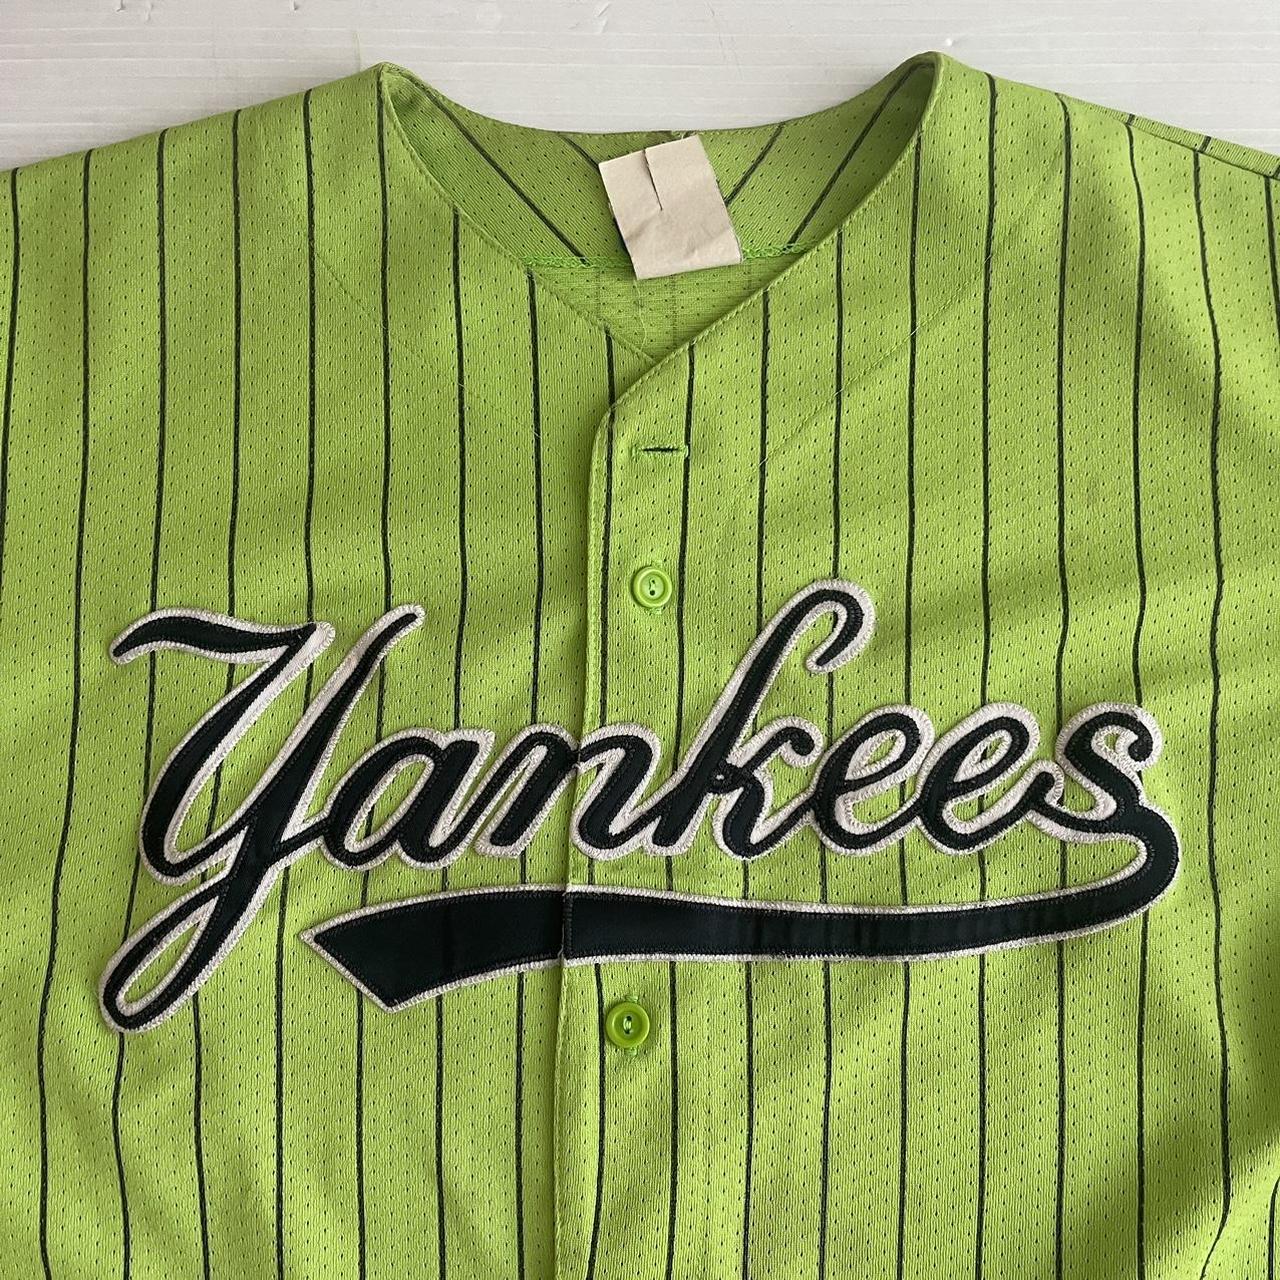 Vintage 90's Majestic Athletic New York Yankees - Depop